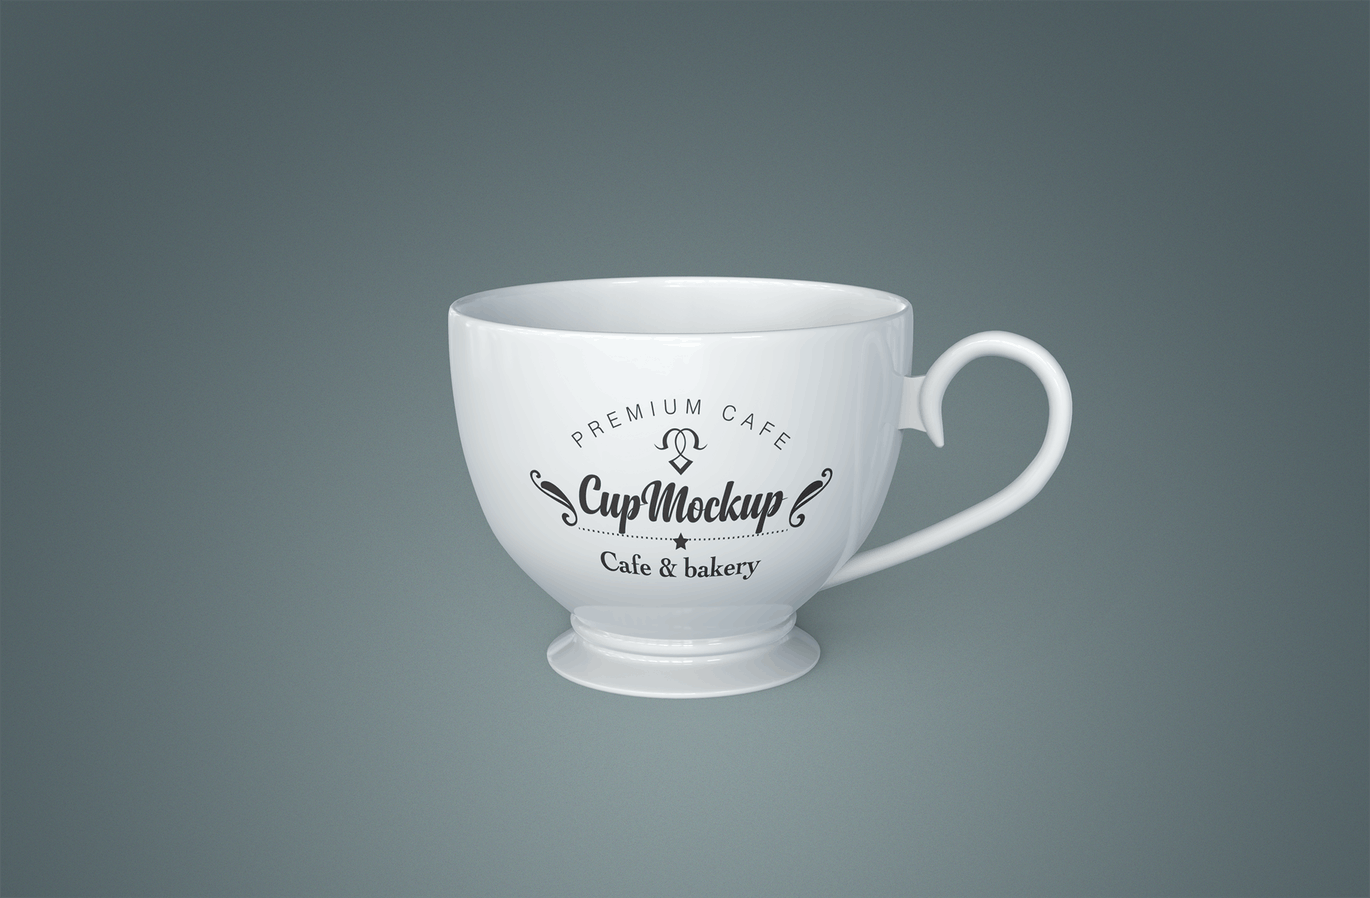 陶瓷茶杯咖啡杯外观设计样机模板v2 Cup Mockup 2.0插图(9)